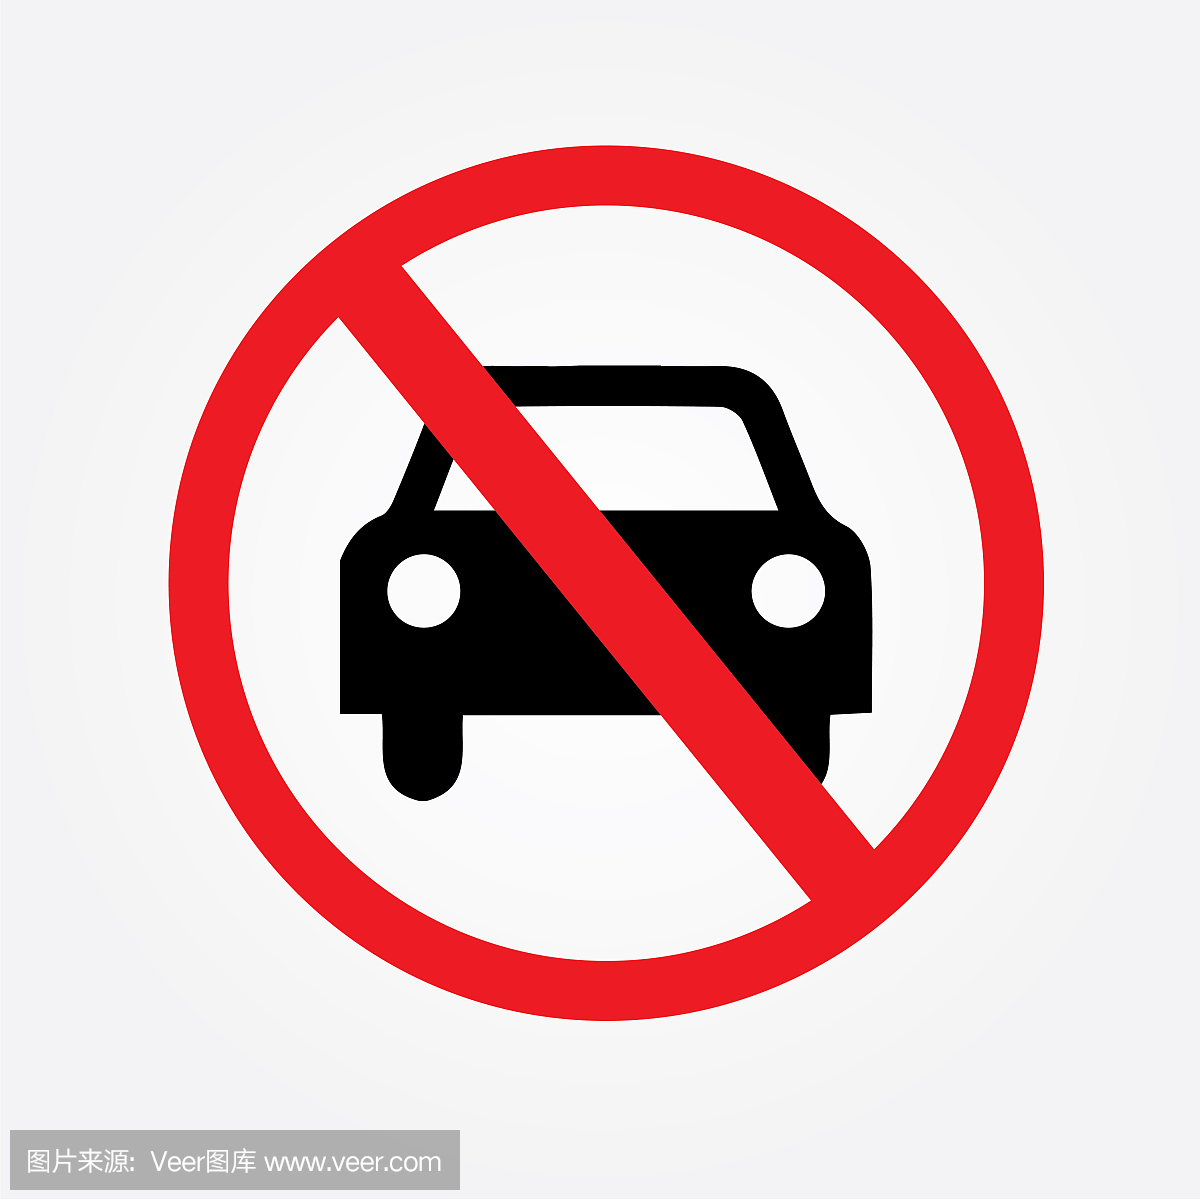 没有车或没有停车交通标志,禁止标志